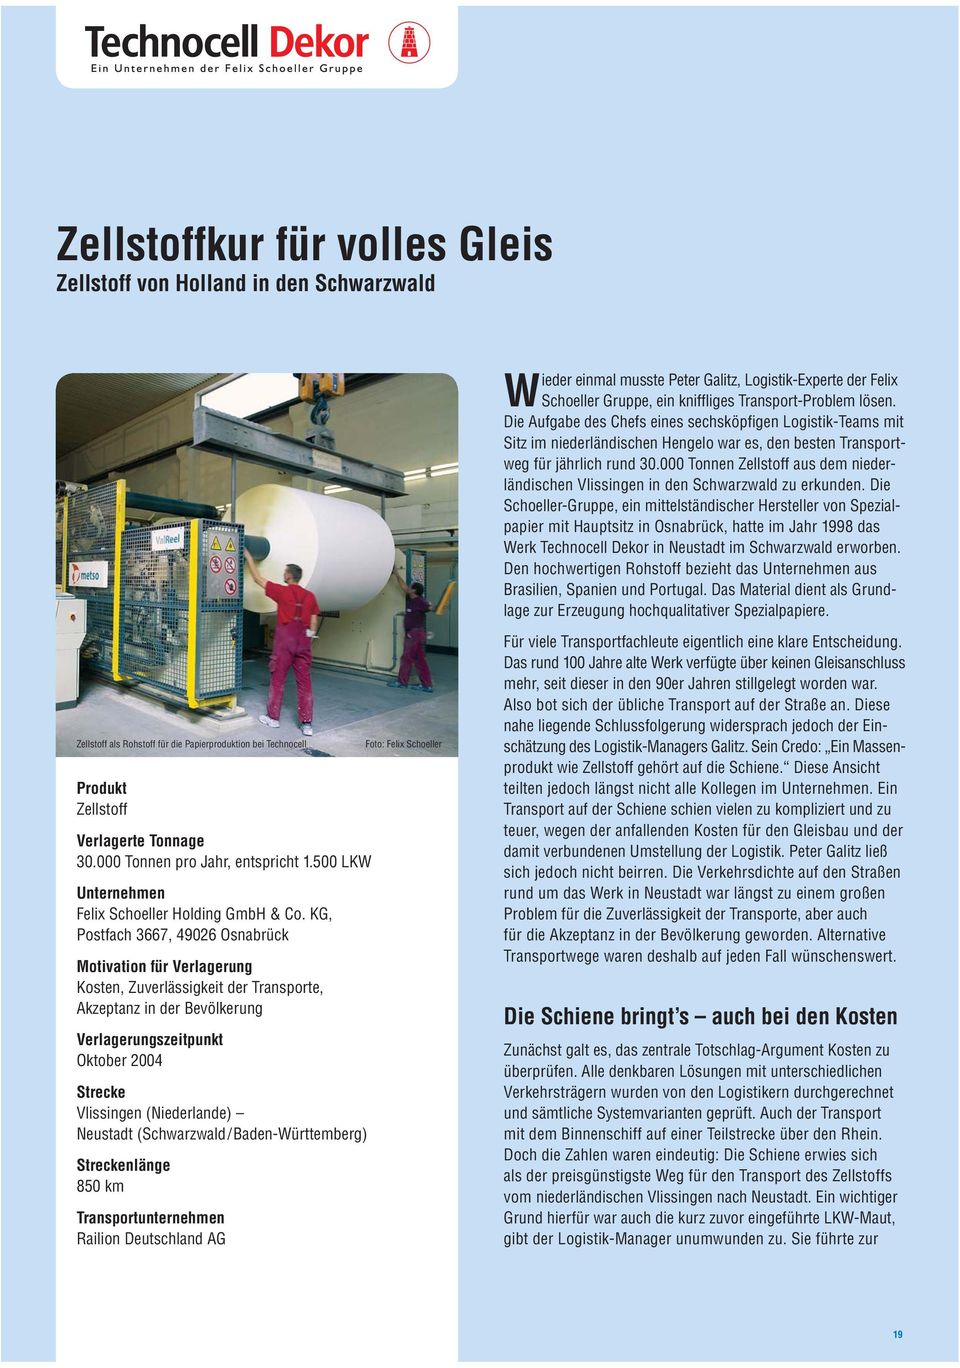 000 Tonnen Zellstoff aus dem niederländischen Vlissingen in den Schwarzwald zu erkunden.